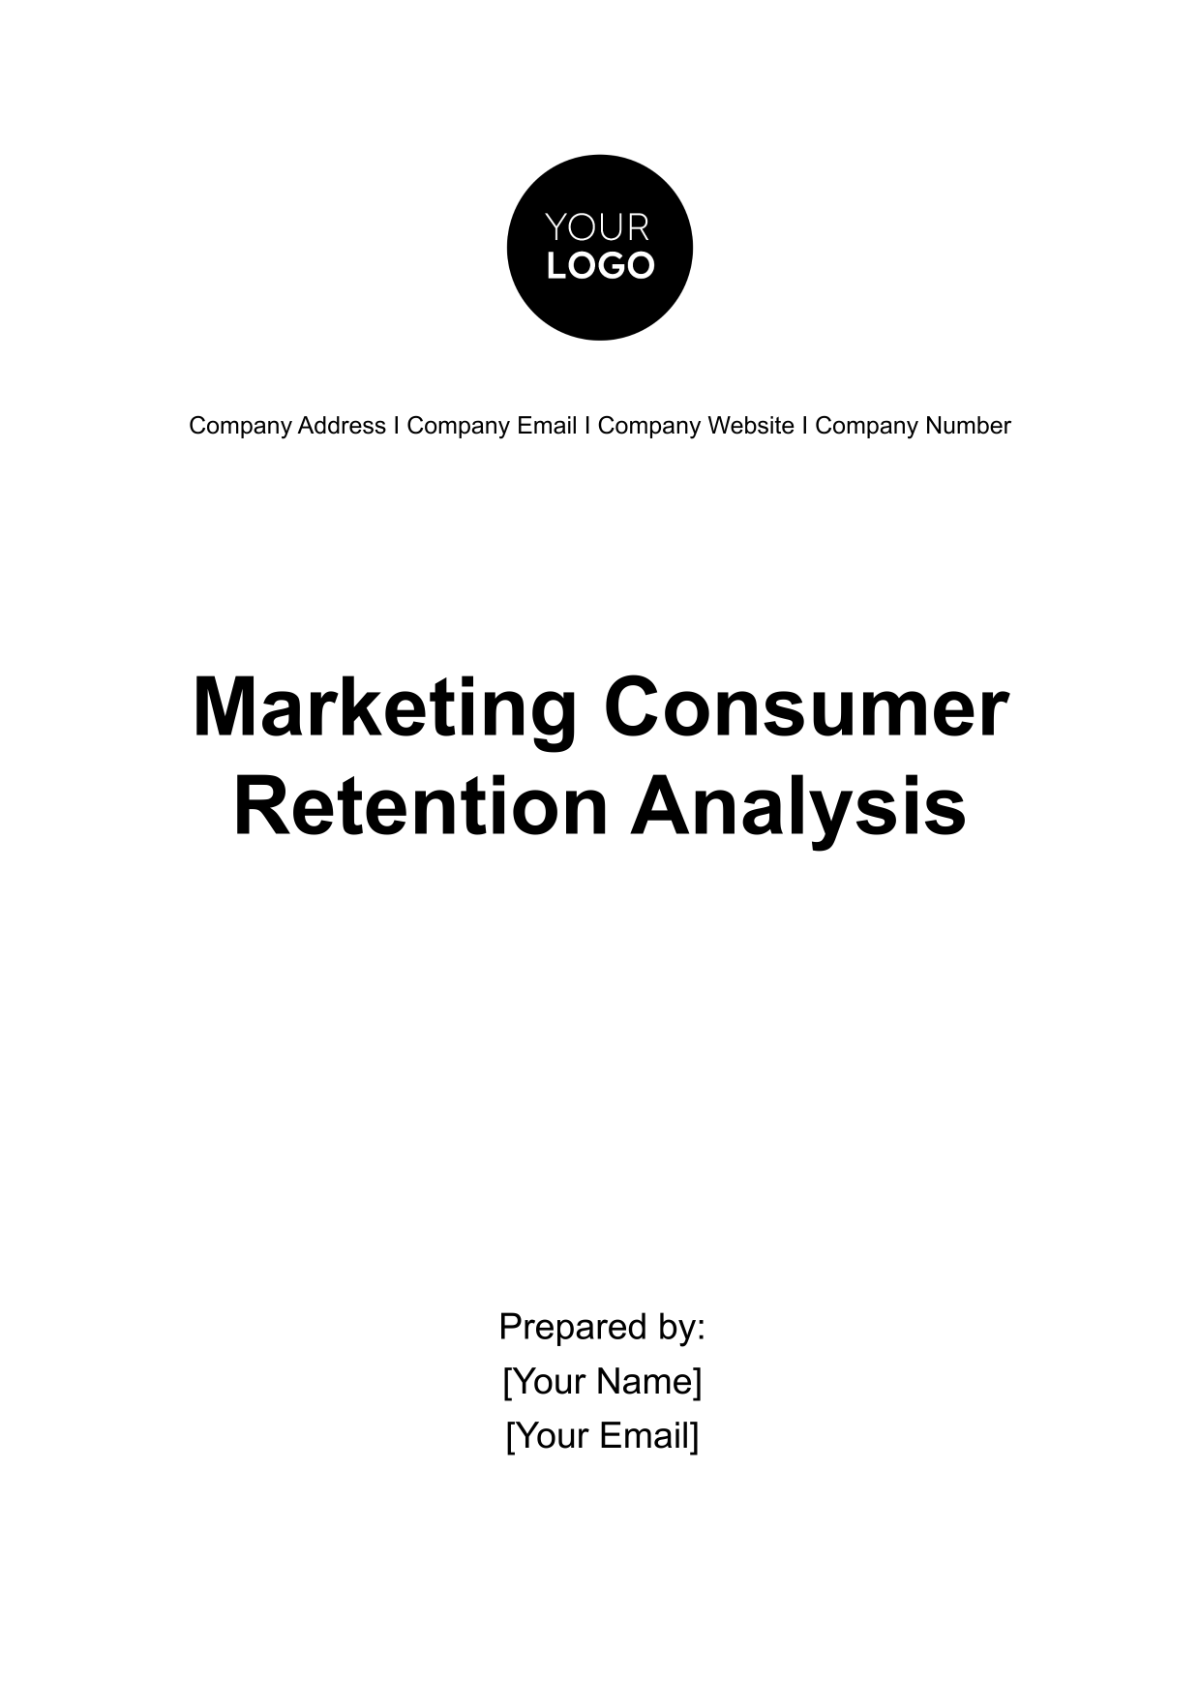 Marketing Consumer Retention Analysis Template